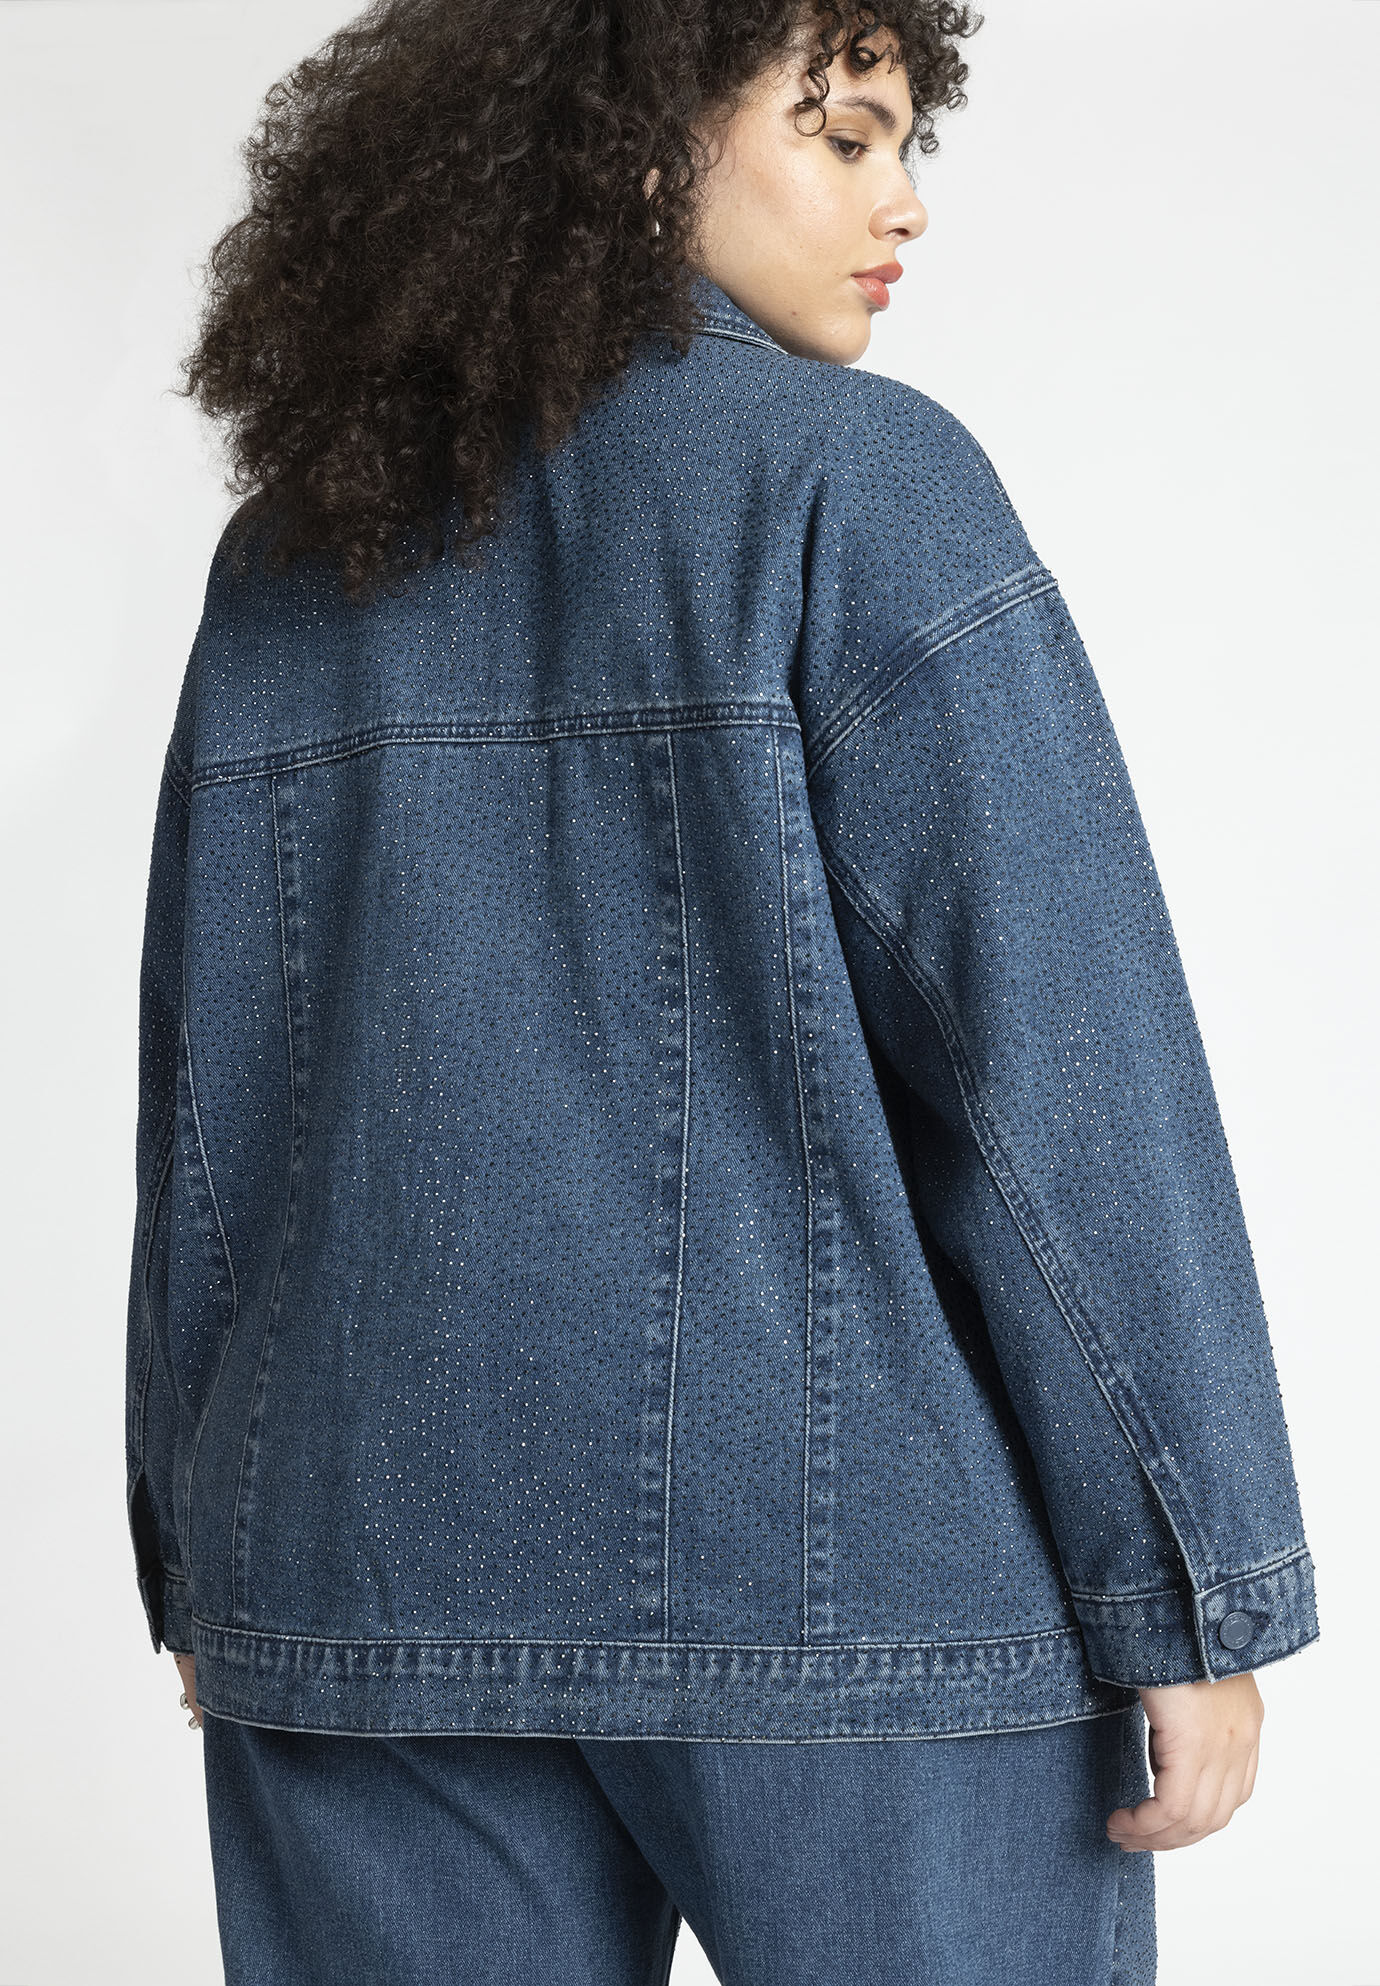 AO.LA by alice + olivia Oversized Embellished Denim Jacket - Luxed